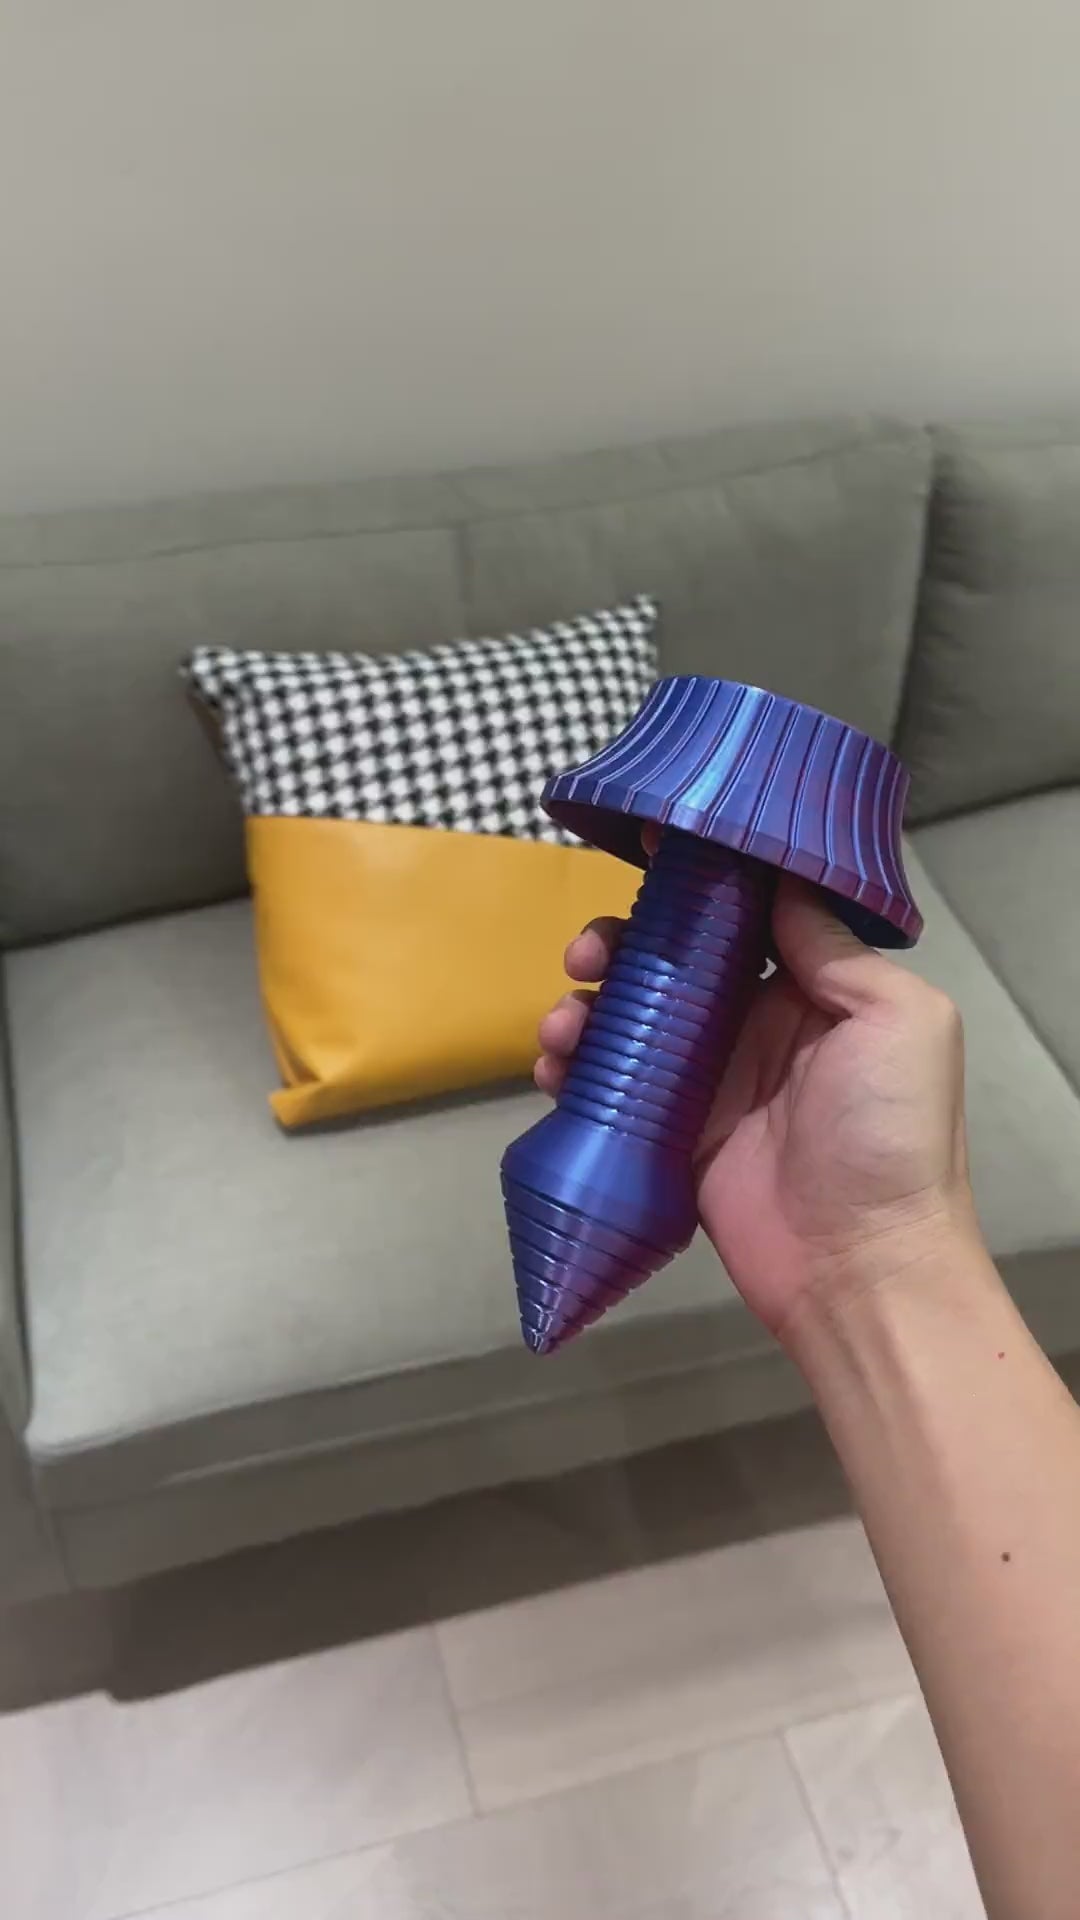 3D nyomtatott stílusos, spirál alakú, kihúzható kard fidget játék gravitációs késes játék 